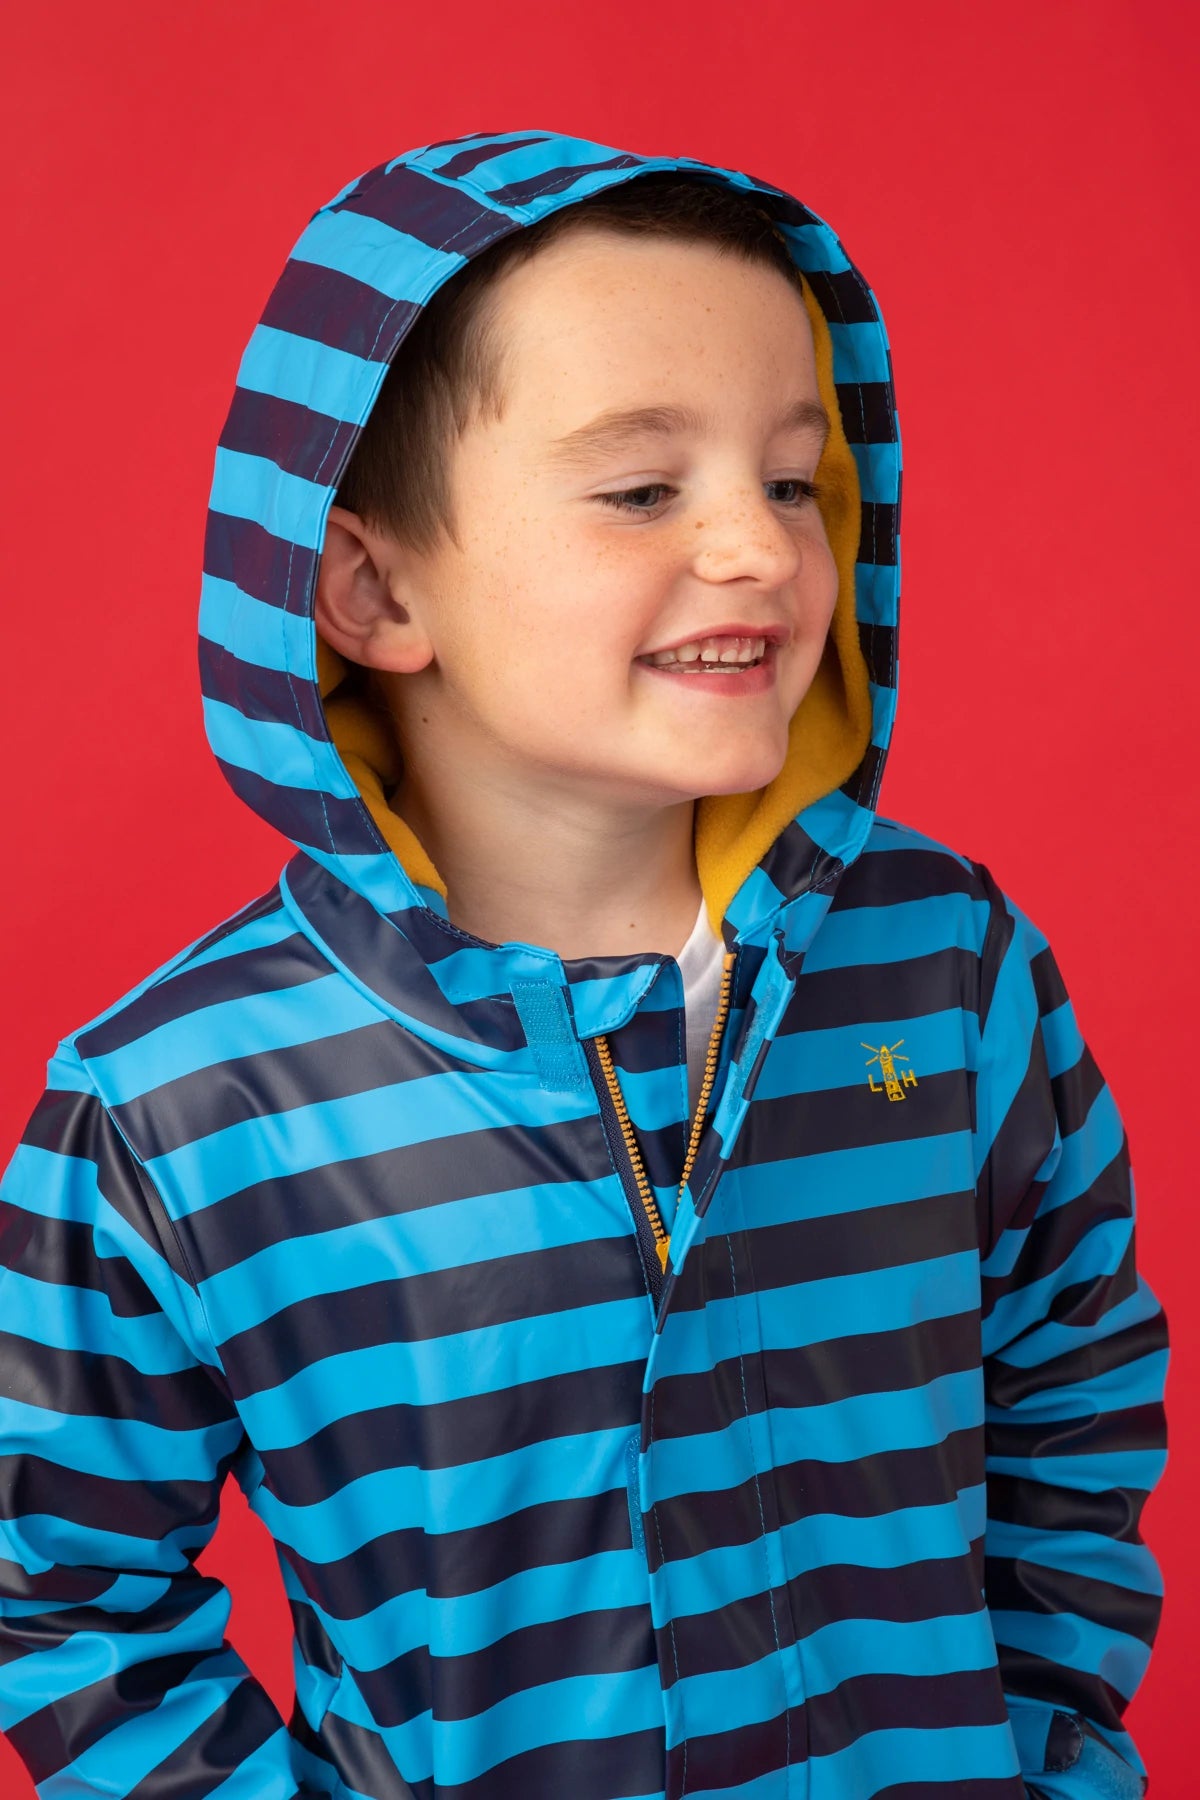 Lighthouse kids polyurethane waterproof Adam style rain jacket in a blue stripe pattern with fleece lining.